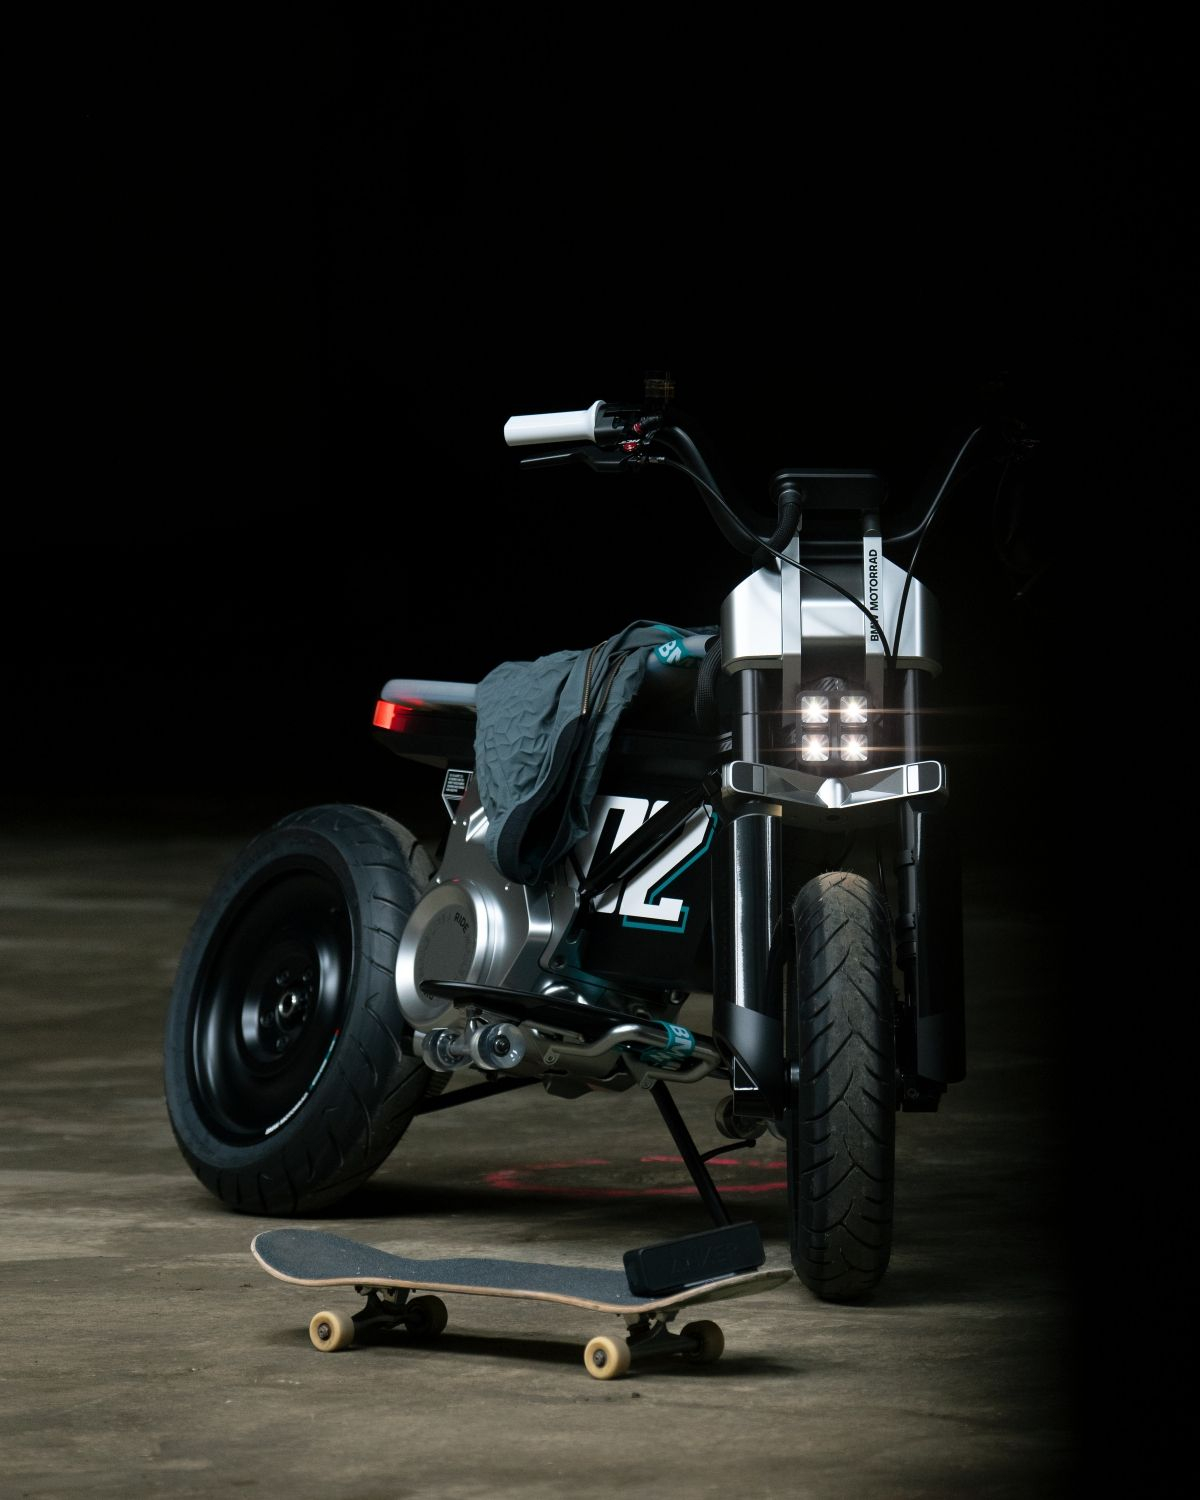 Zwischen Motorrad und Scooter: BMW präsentiert Concept-Bike